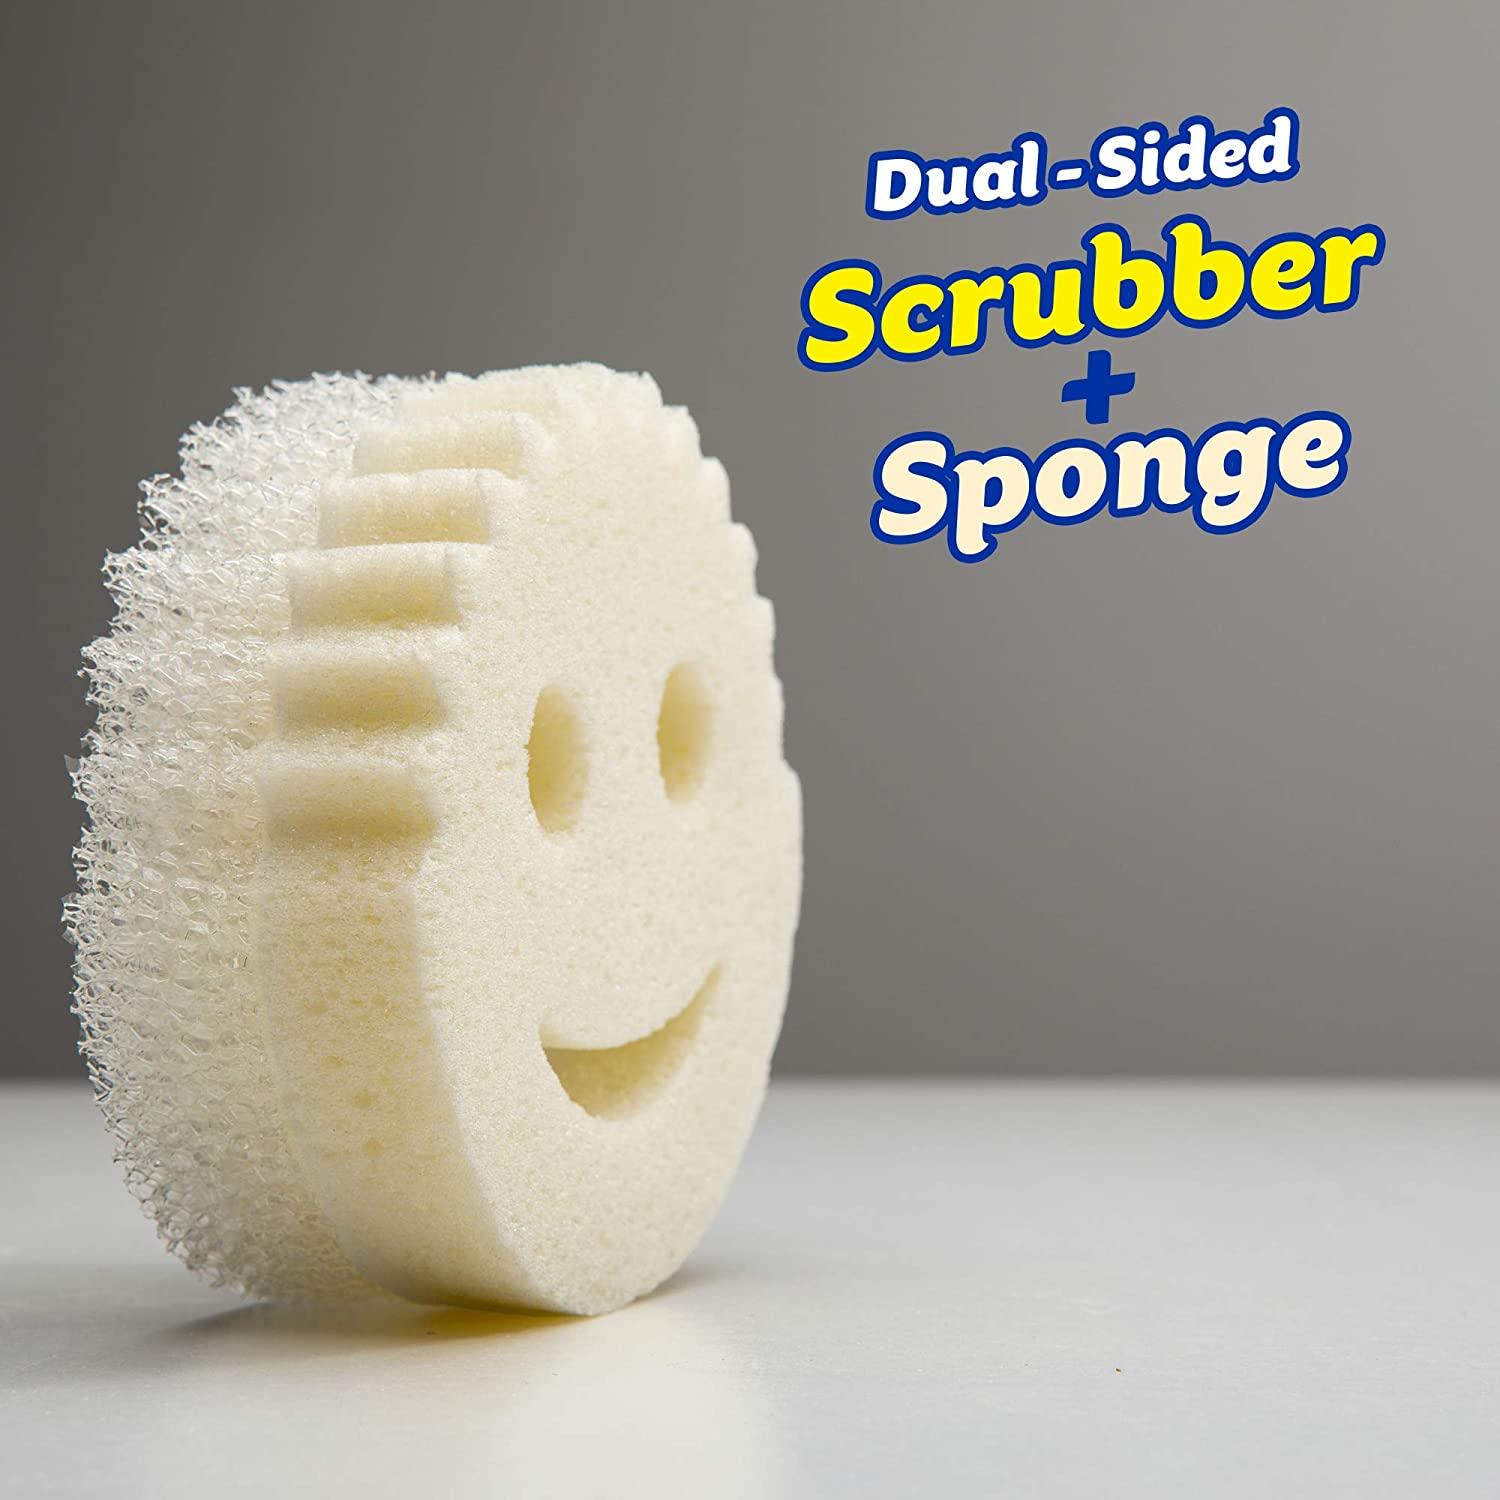 Scrub Daddy Dual-Sided Sponge and Scrubber- Scrub Mommy Dye Free